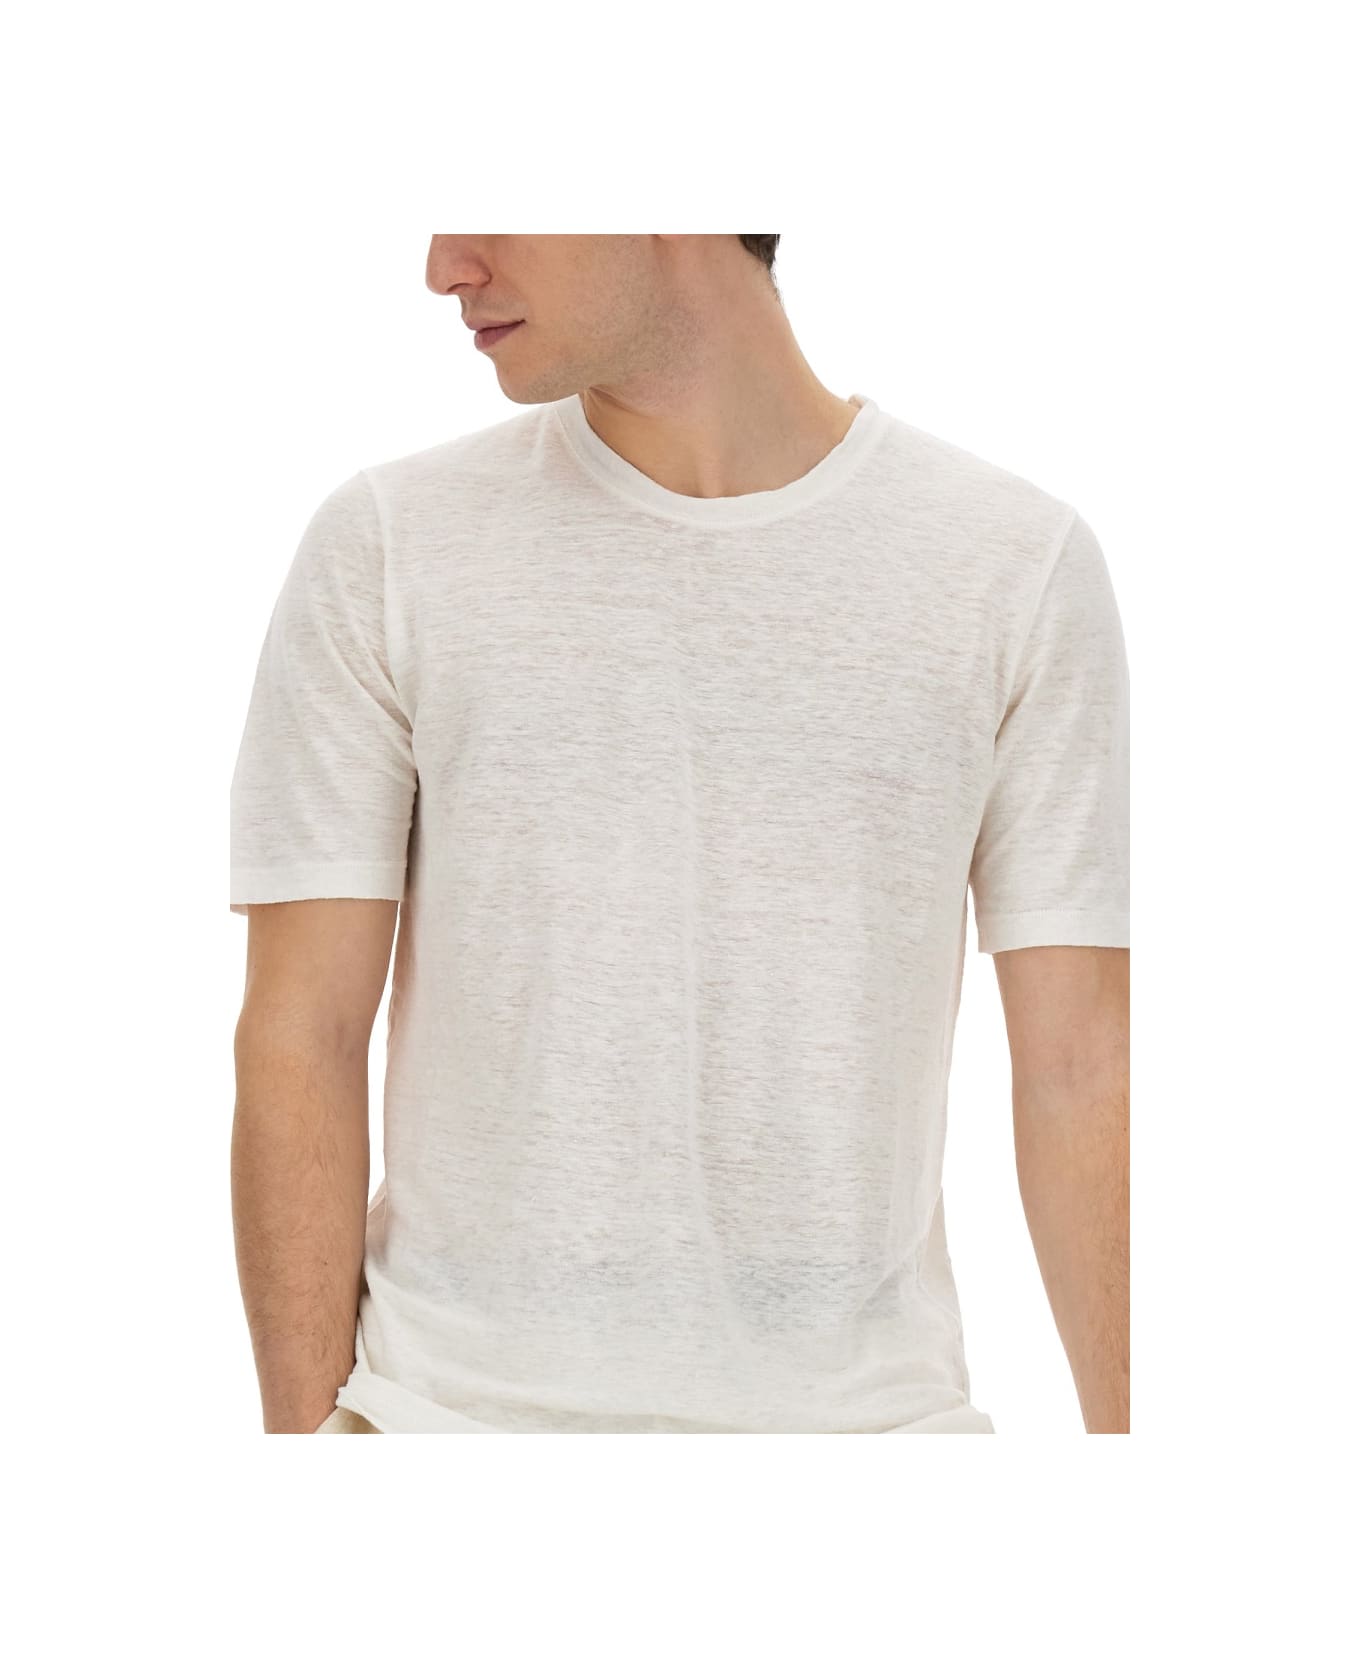 120% Lino Linen T-shirt - WHITE